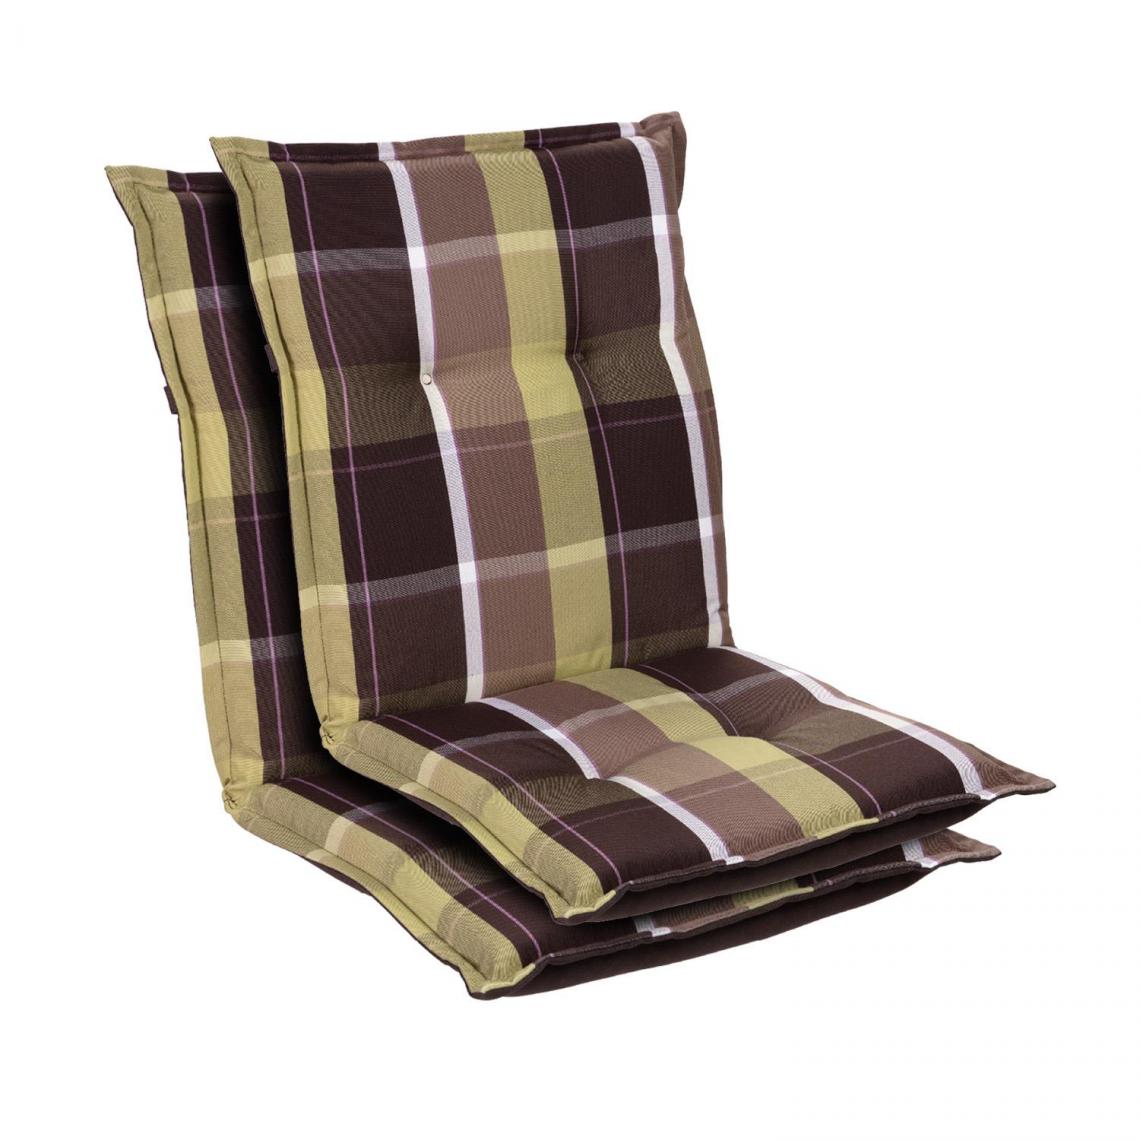 Blumfeldt - Prato coussin de fauteuil dossier bas Polyester 50x100x8cm - Vert - Coussins, galettes de jardin